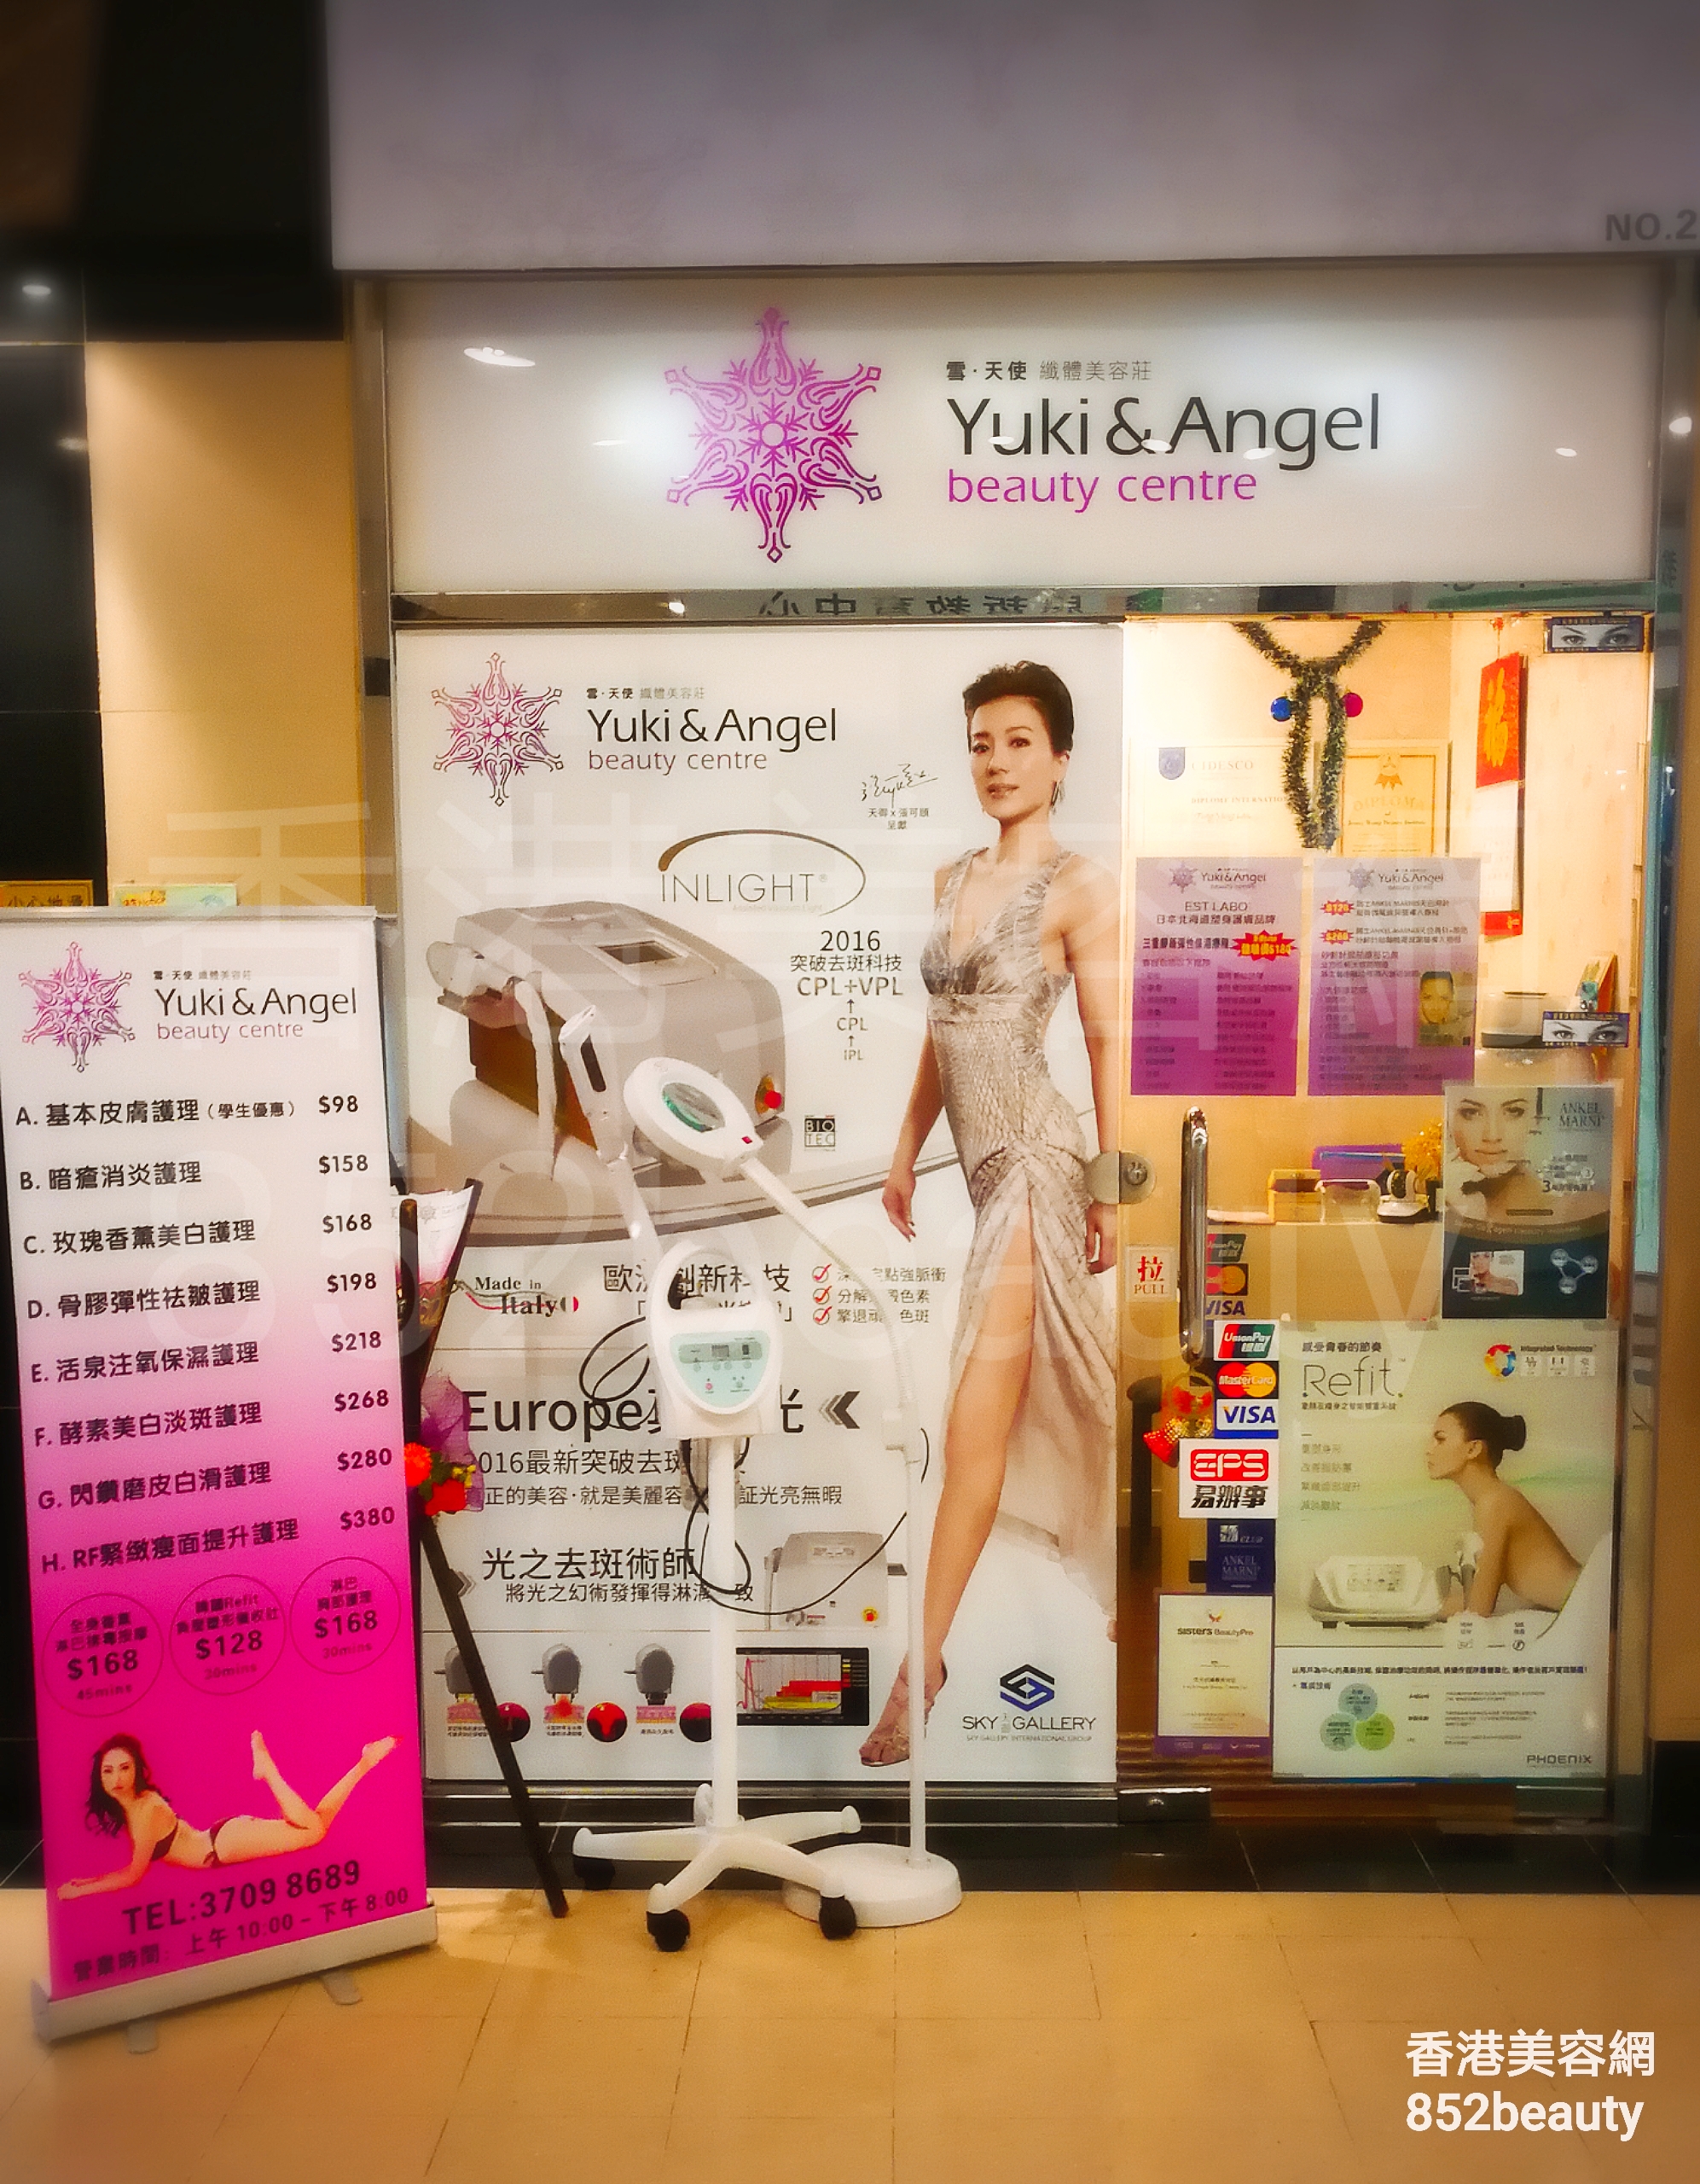 美容院: Yuki & Angel beauty centre